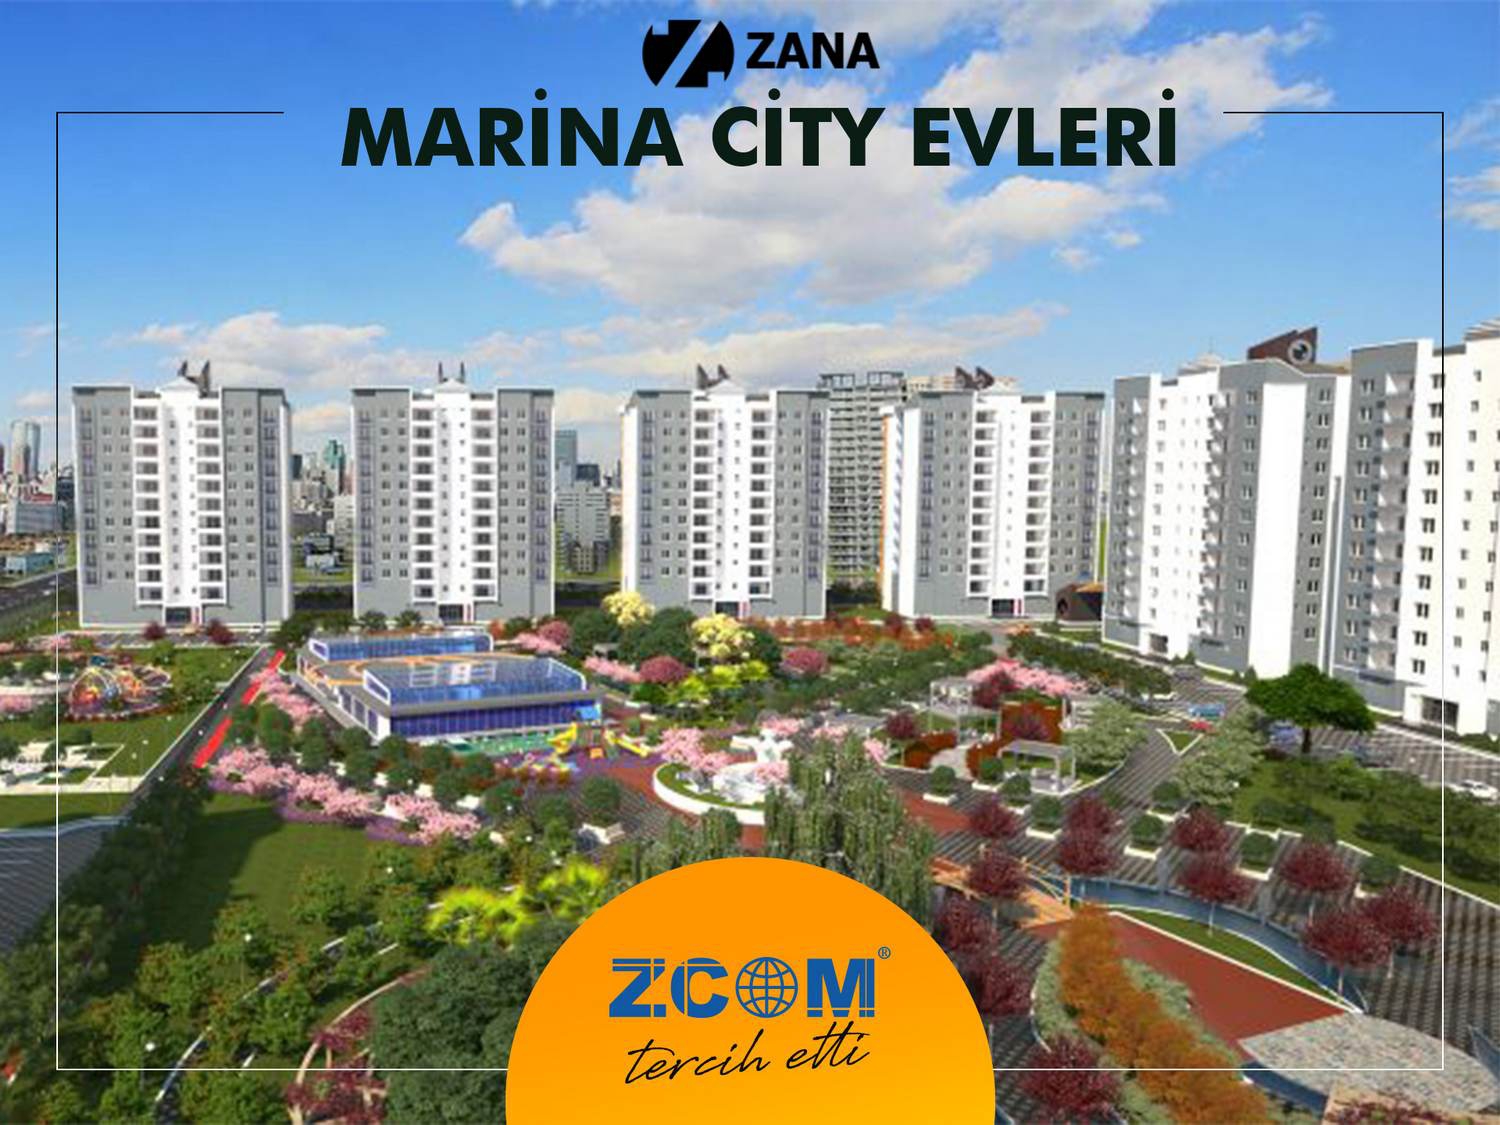 Zana Marina City Evleri